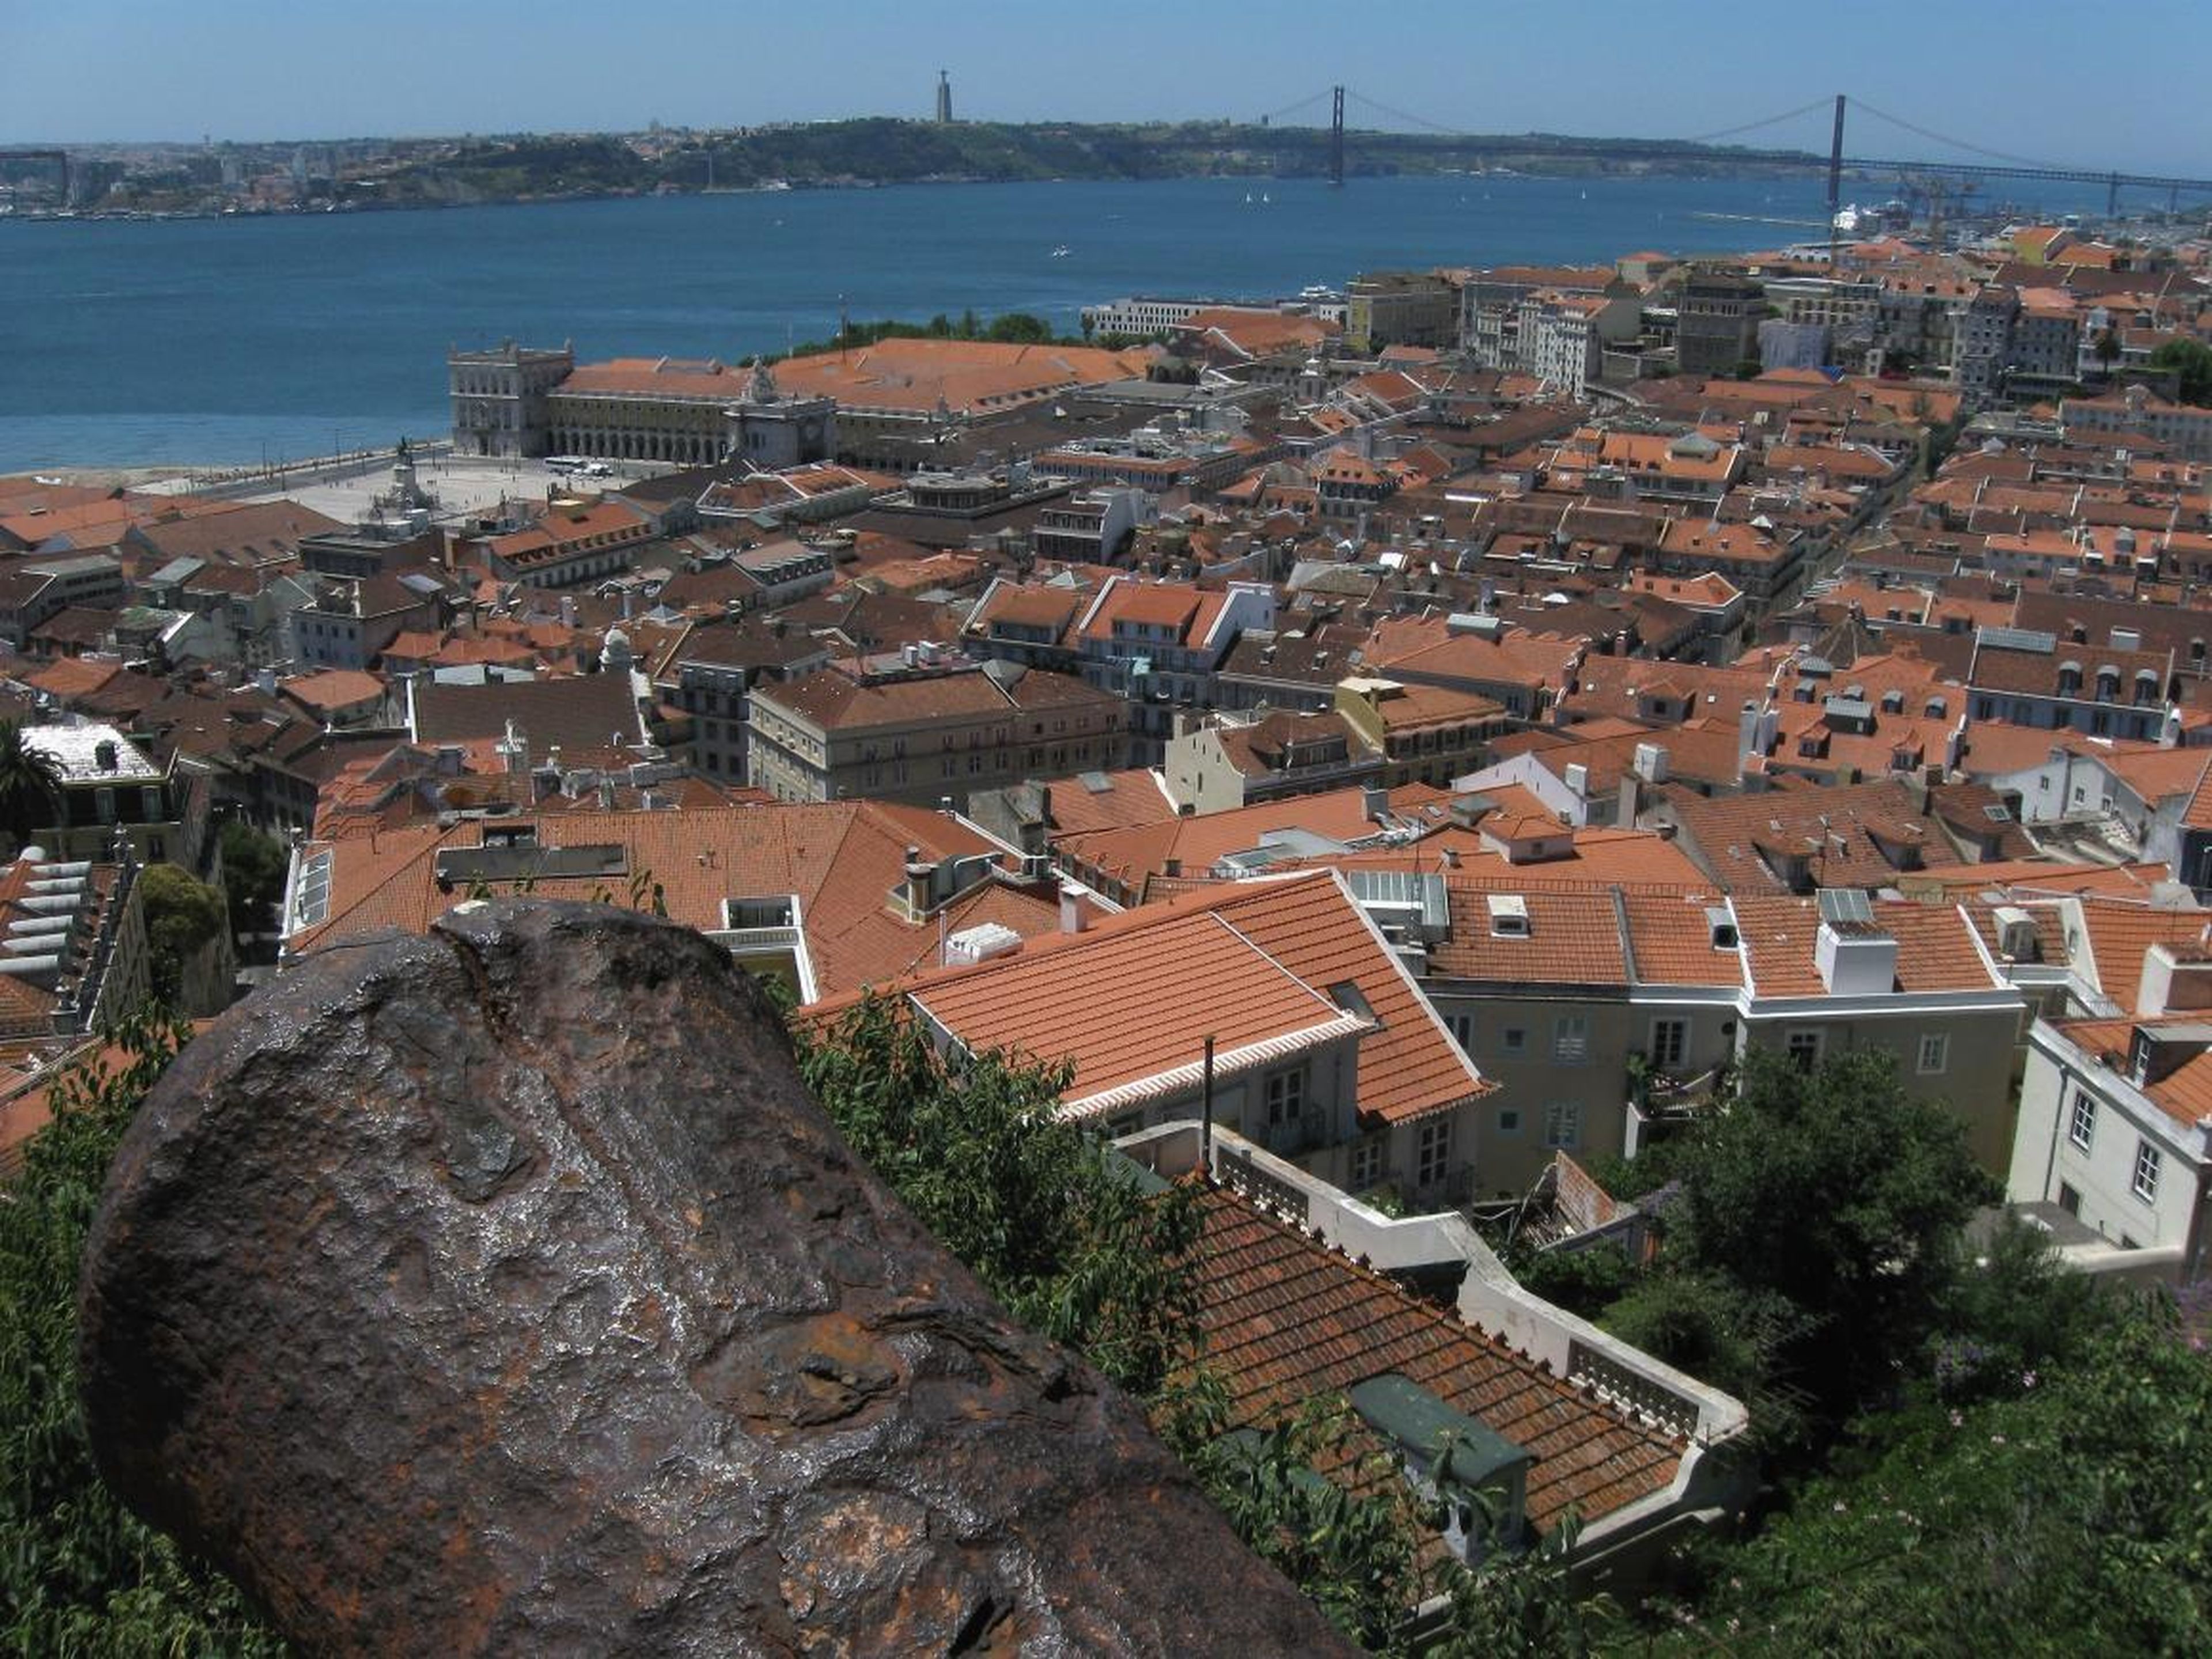 Vista del castillo de San Jorge en Lisboa, Portugal.